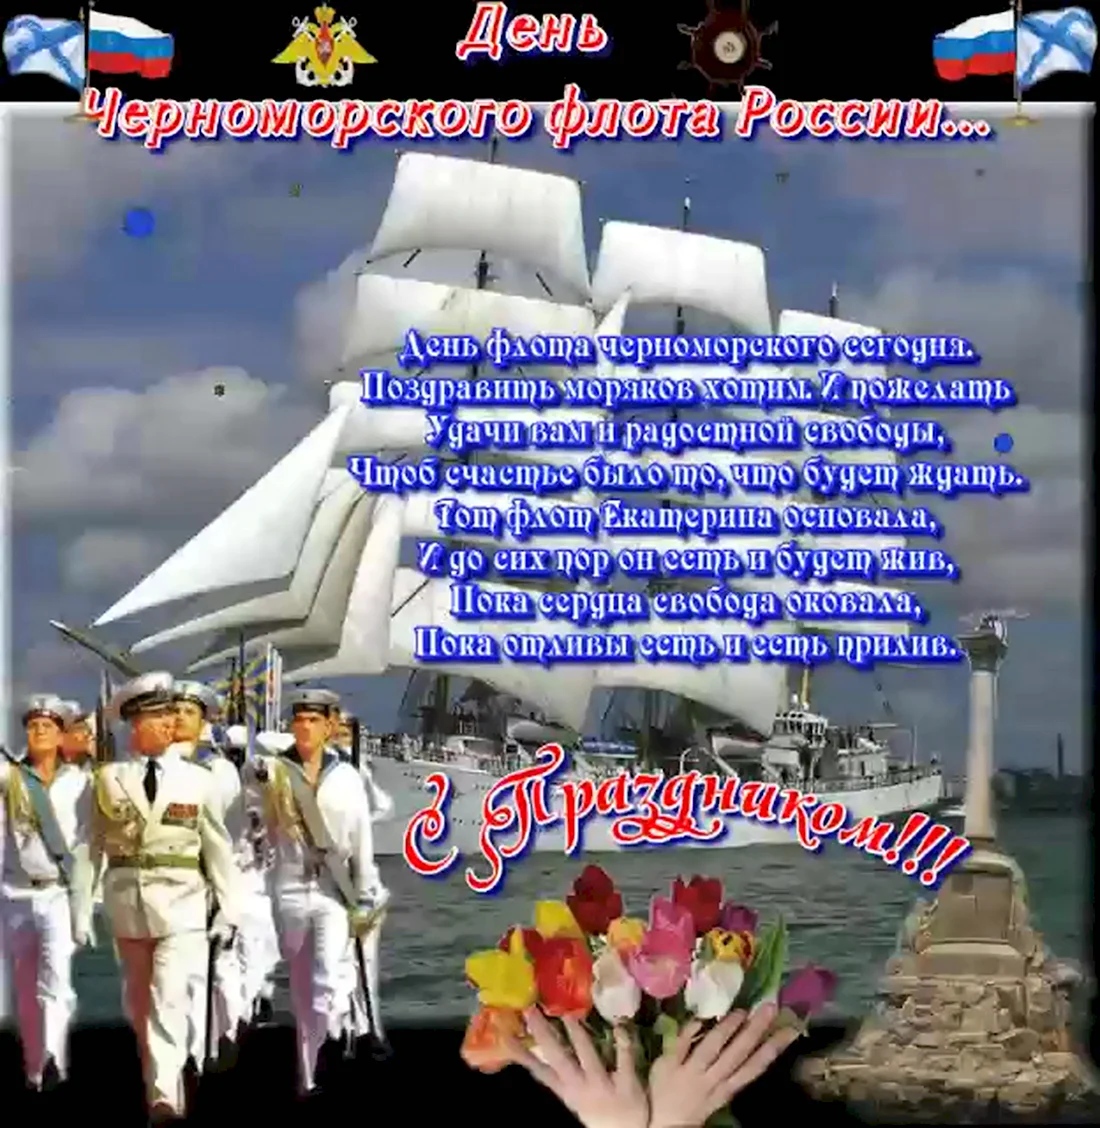 День Черноморского флота. Открытка, картинка с поздравлением, с праздником